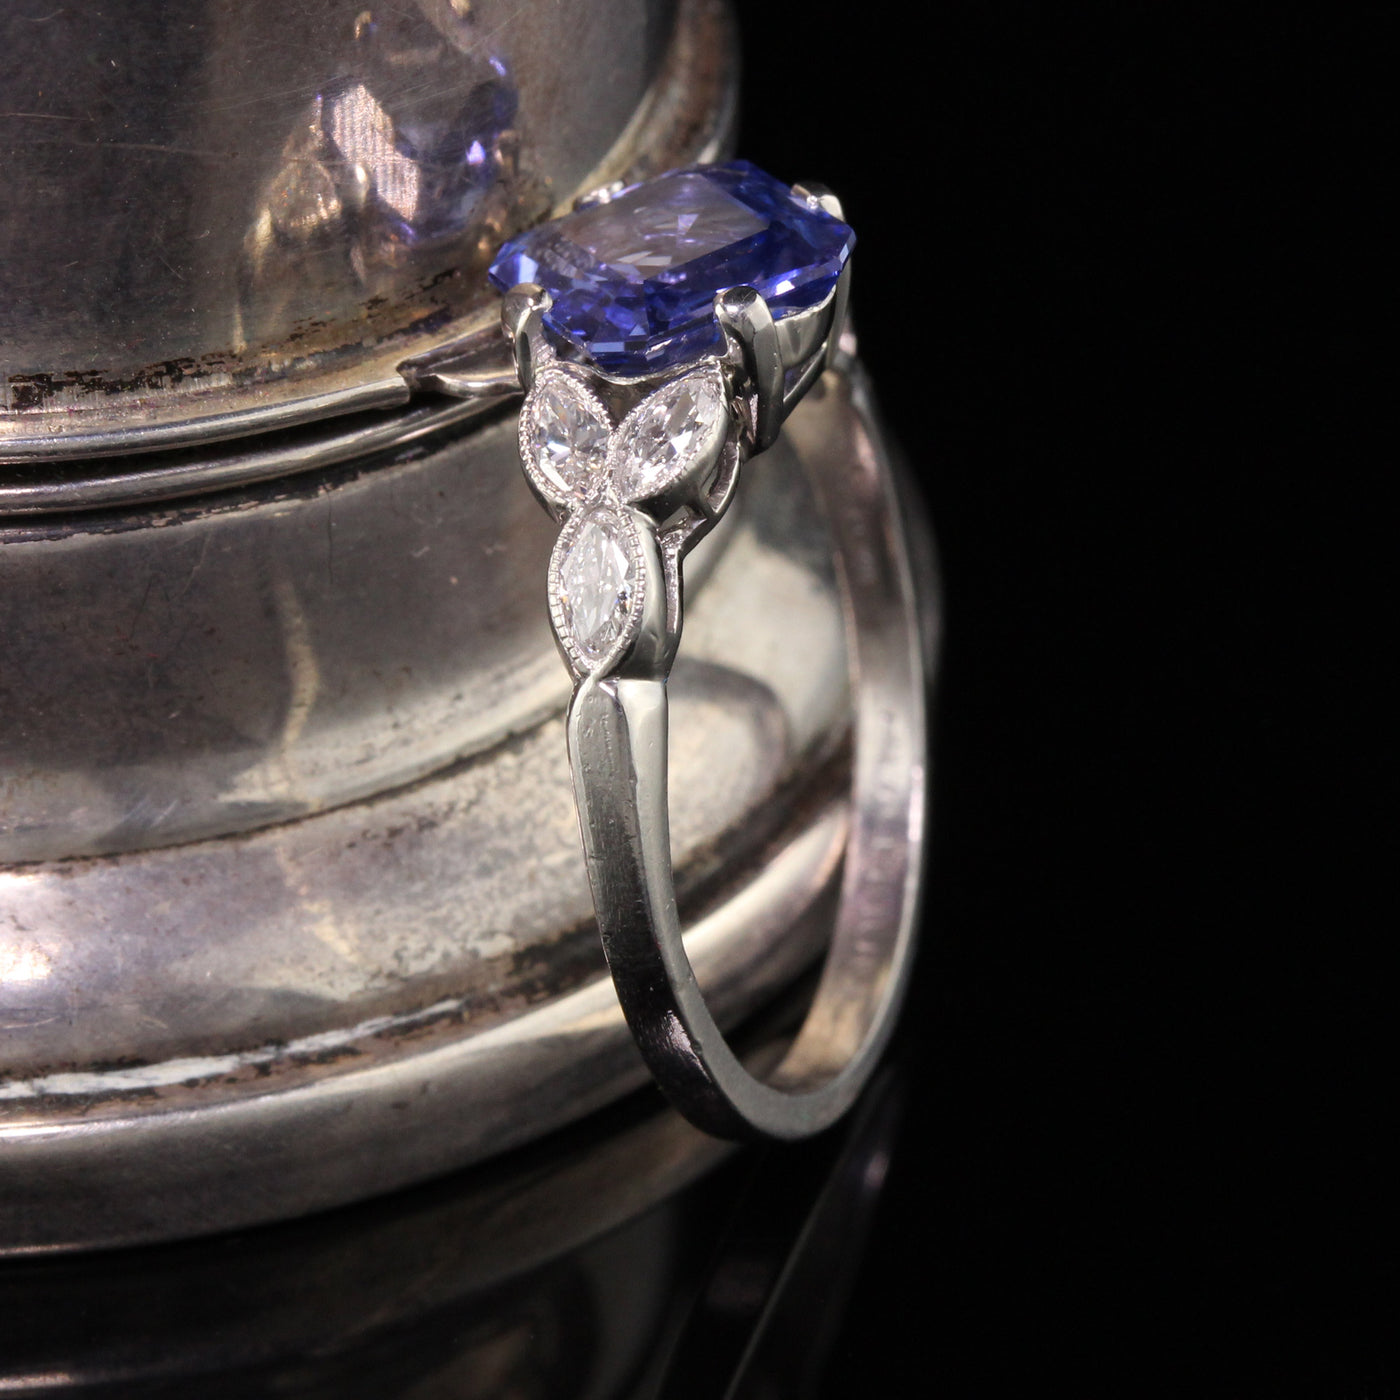 Antique Art Deco Platinum Diamond and Sapphire Engagement Ring